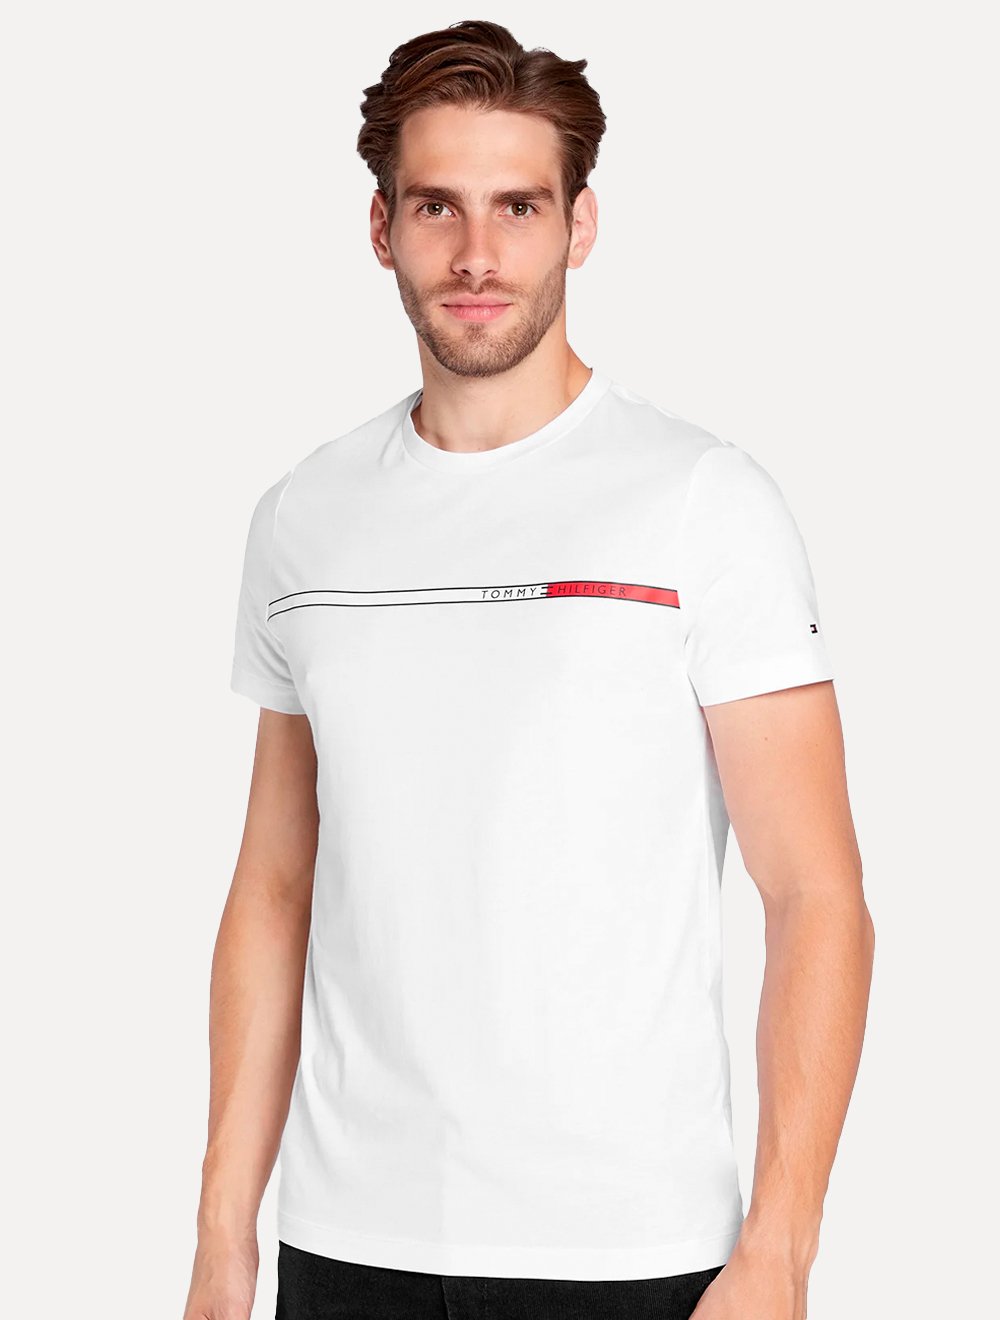 Camiseta Tommy Hilfiger Masculina Regular Fit Em Algodão Egípcio New York  City Branca